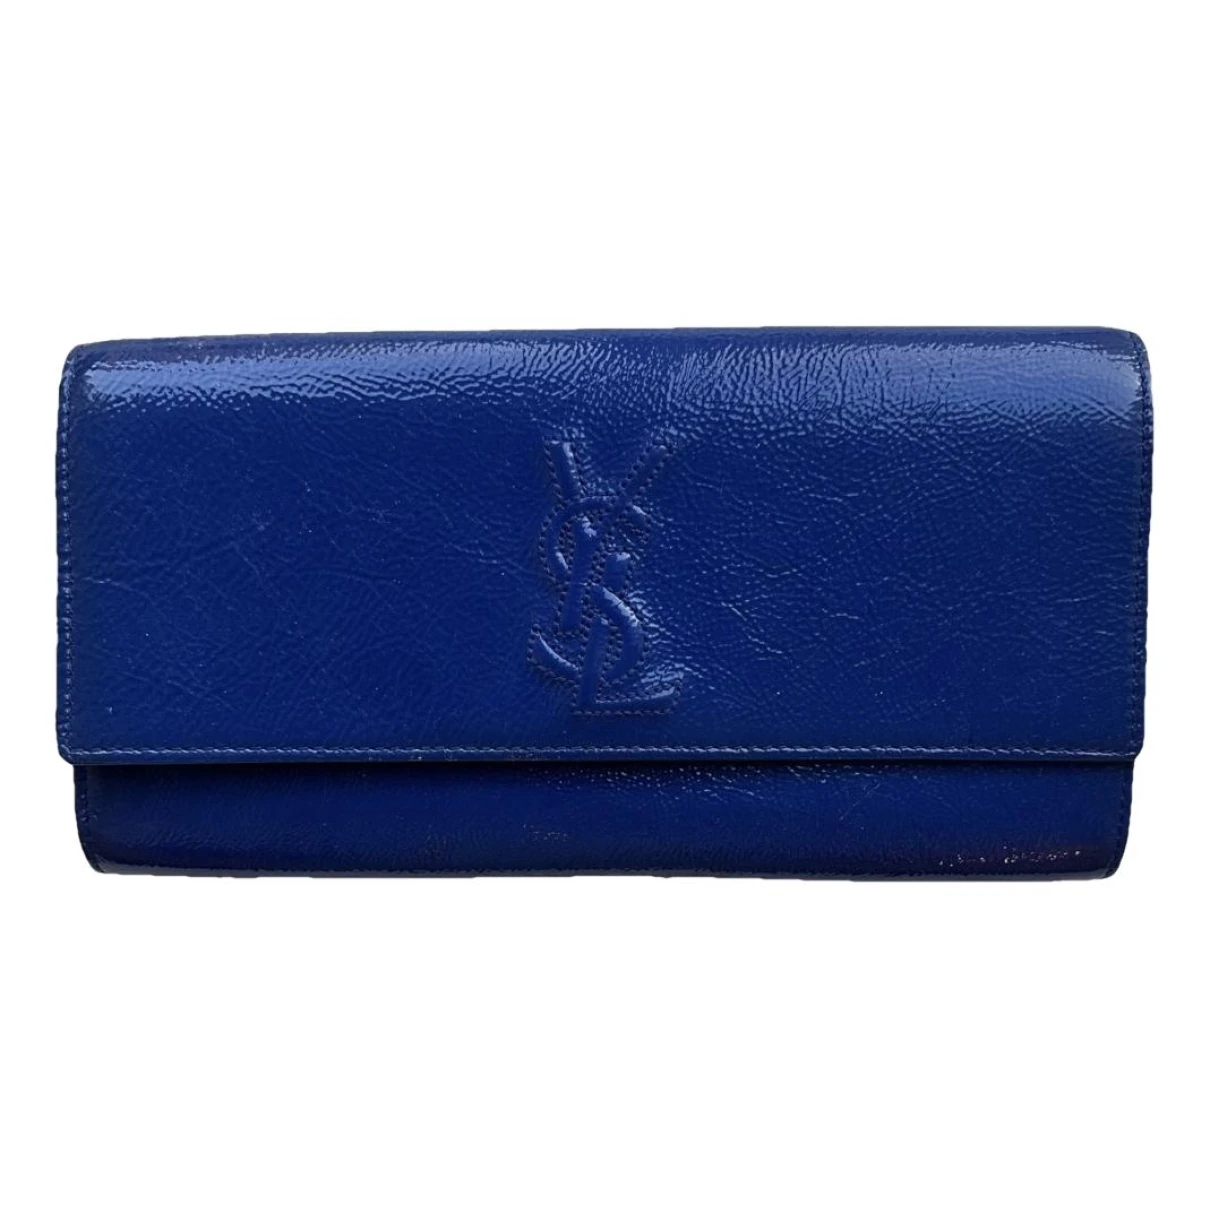 Pre-owned Saint Laurent Belle De Jour Patent Leather Clutch Bag In Blue